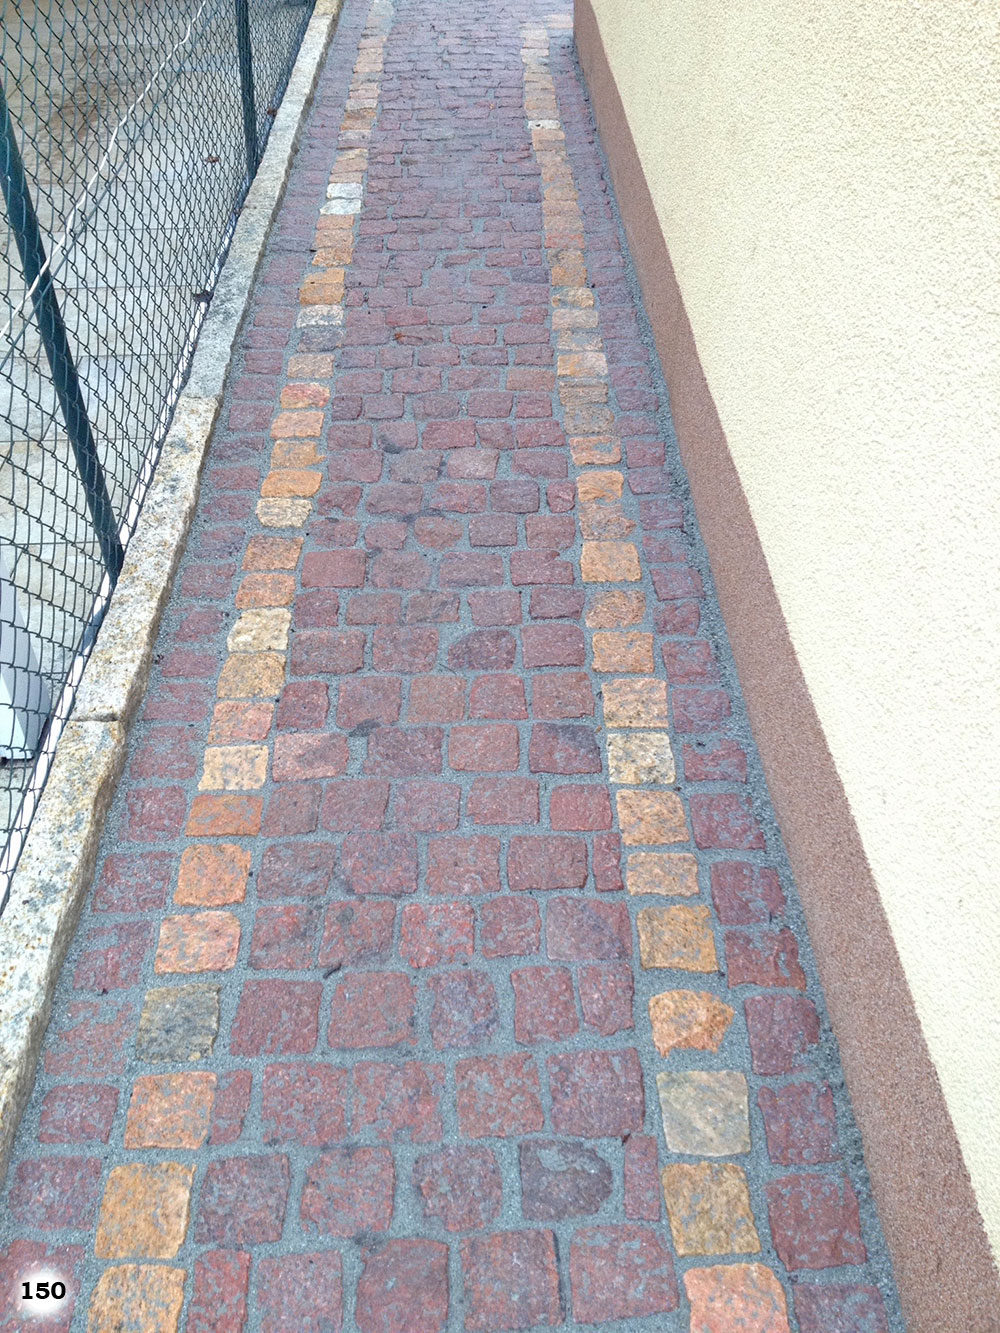 roter Pflastersteinweg mit zwei Streifen aus gelben Pflastersteinen